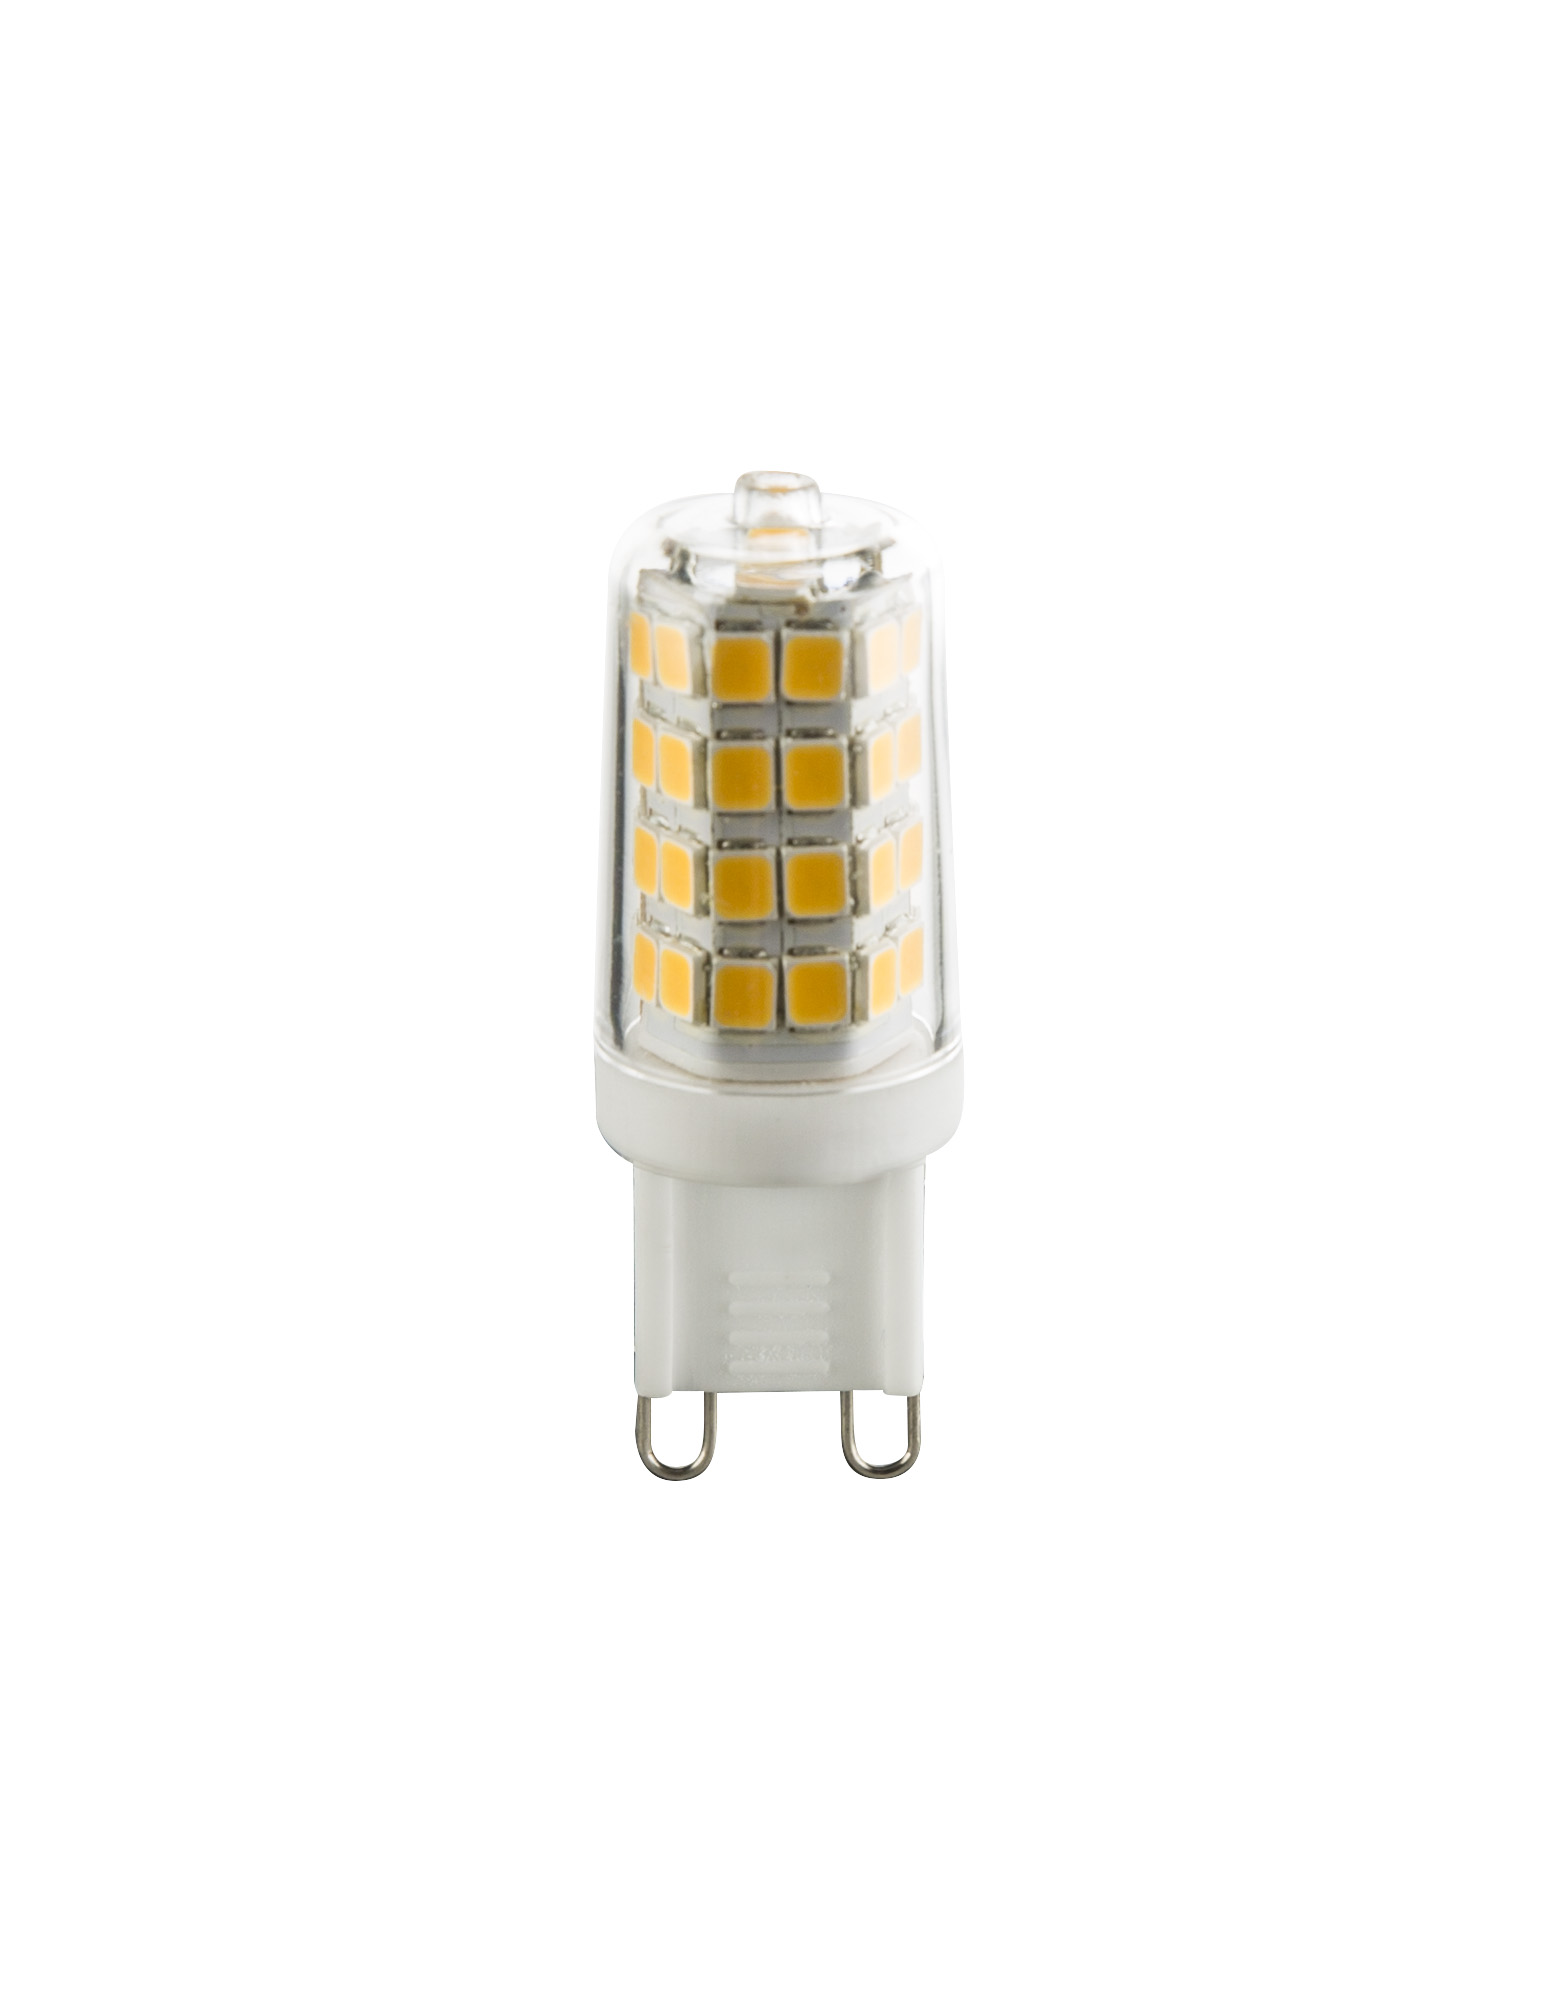 LED bulb clear, 1x G9 LED - 10676